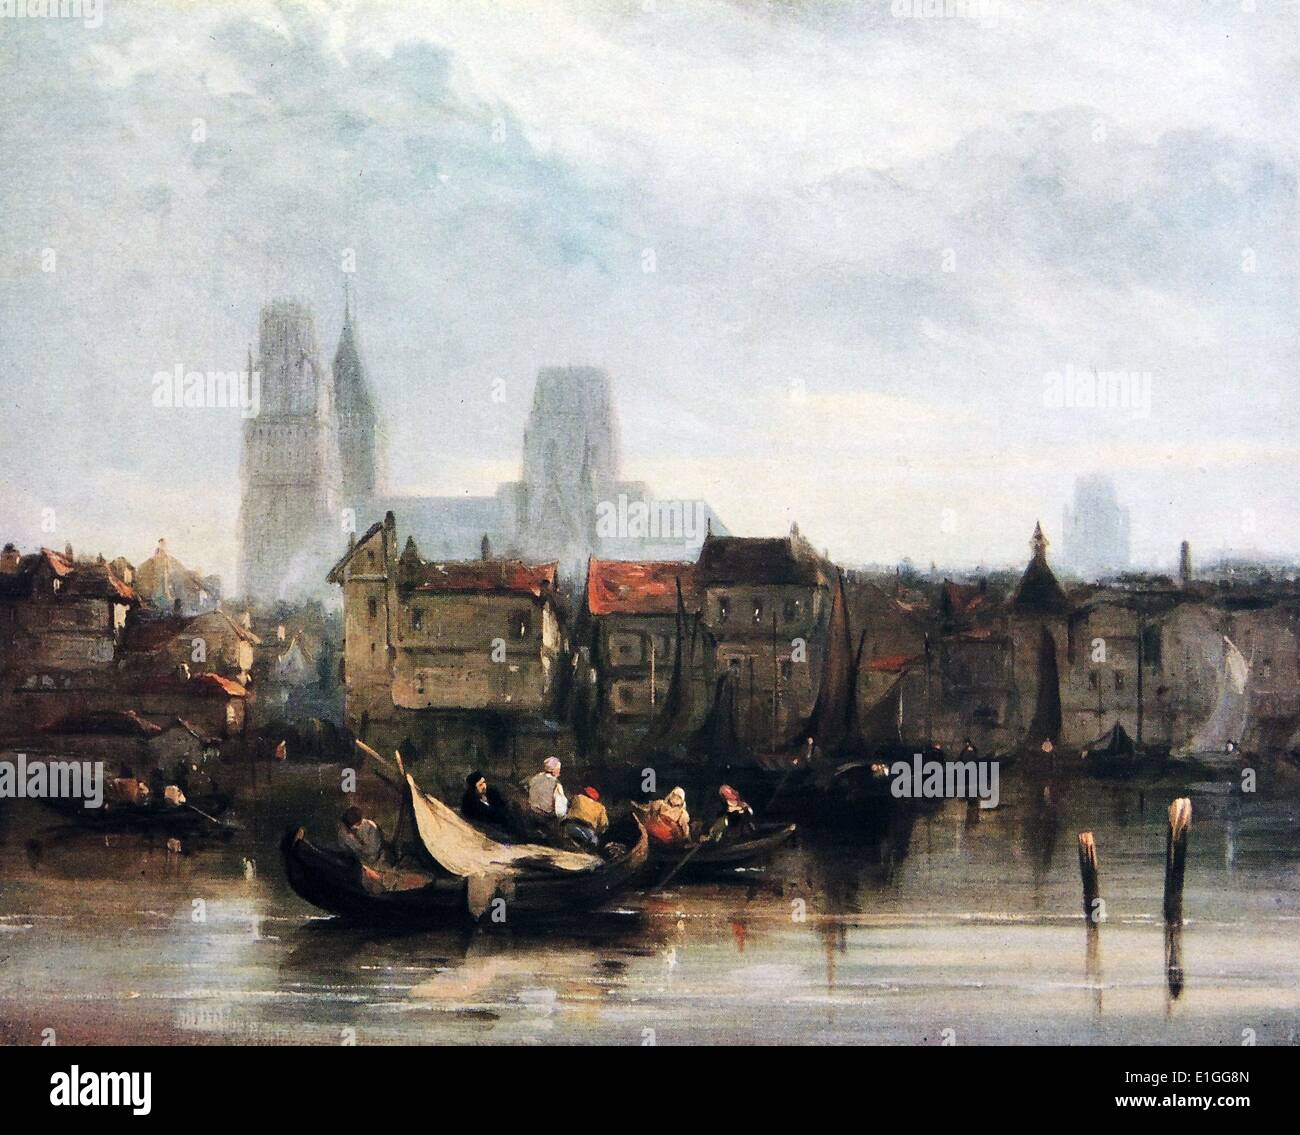 Rouen. Peinture à l'huile représentant une scène de rivière de la ville de Rouen sur la Seine, France. Par Pesne (1801 -1828) un peintre de paysage romantique. Banque D'Images